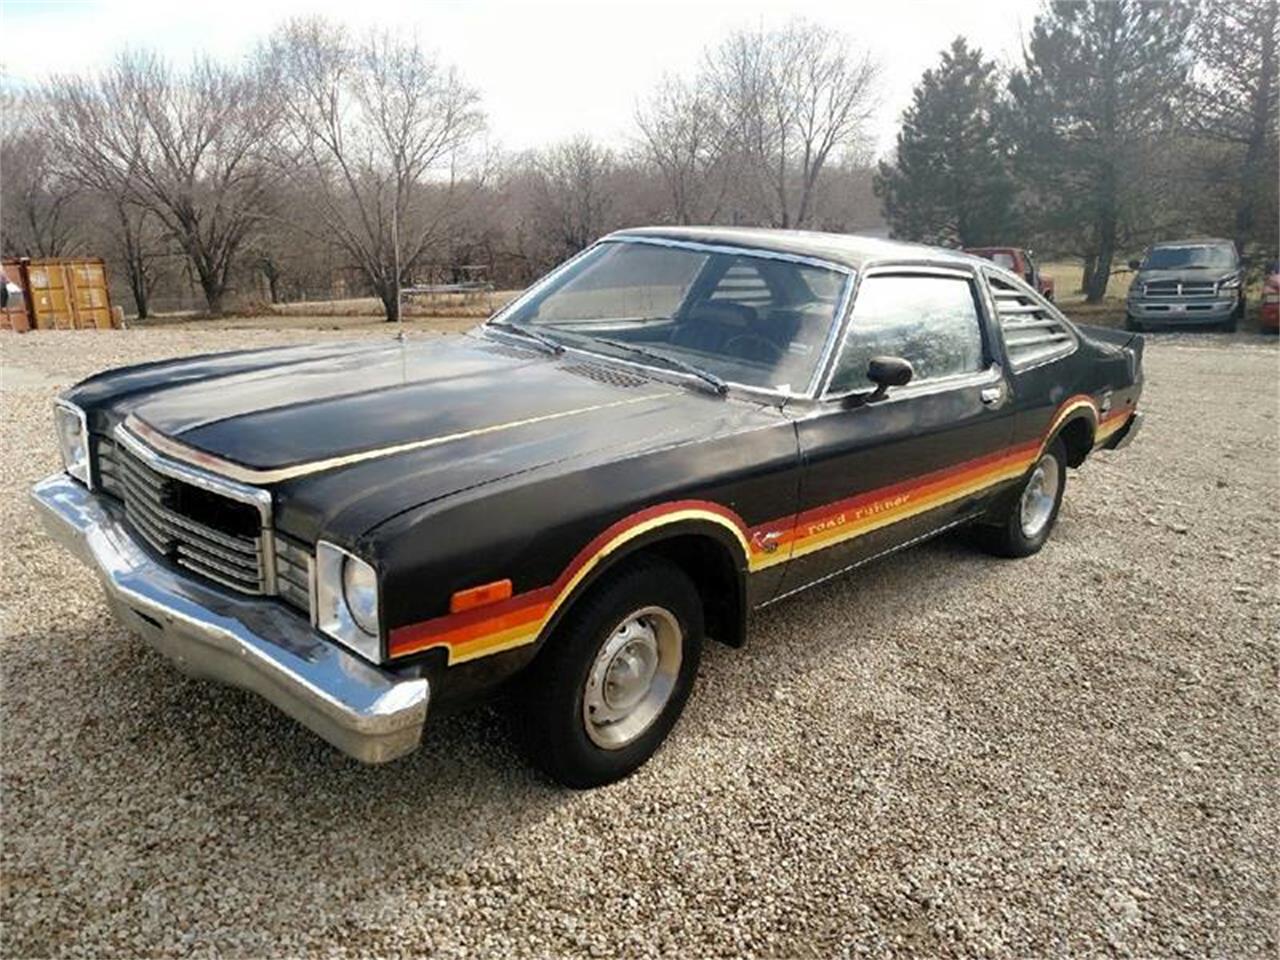 For Sale: 1978 Plymouth Road Runner in Burlington, Kansas.